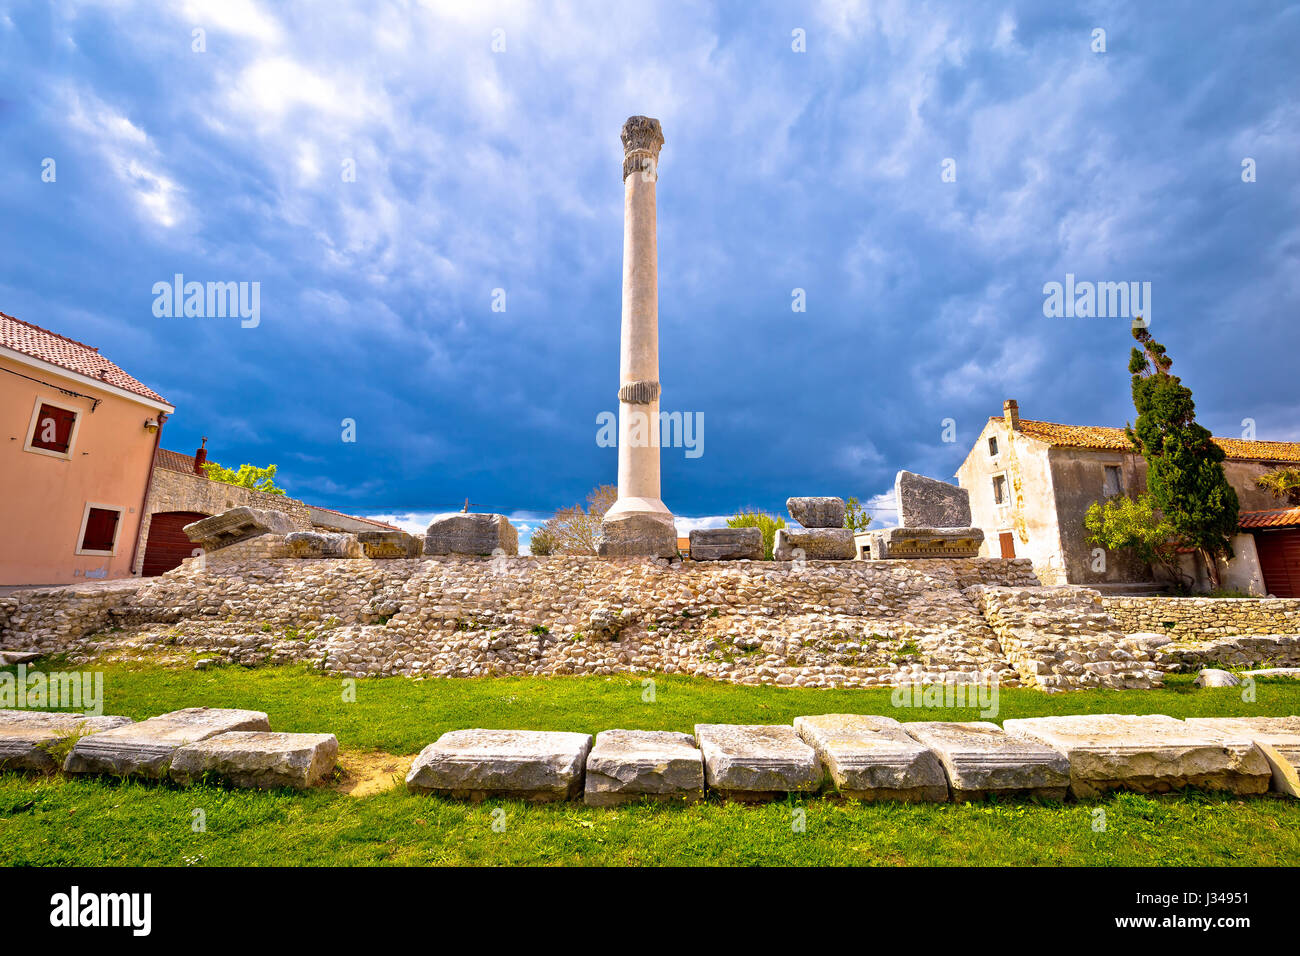 Old roman ruins in town of Nin, Dalmatia, Croatia Stock Photo